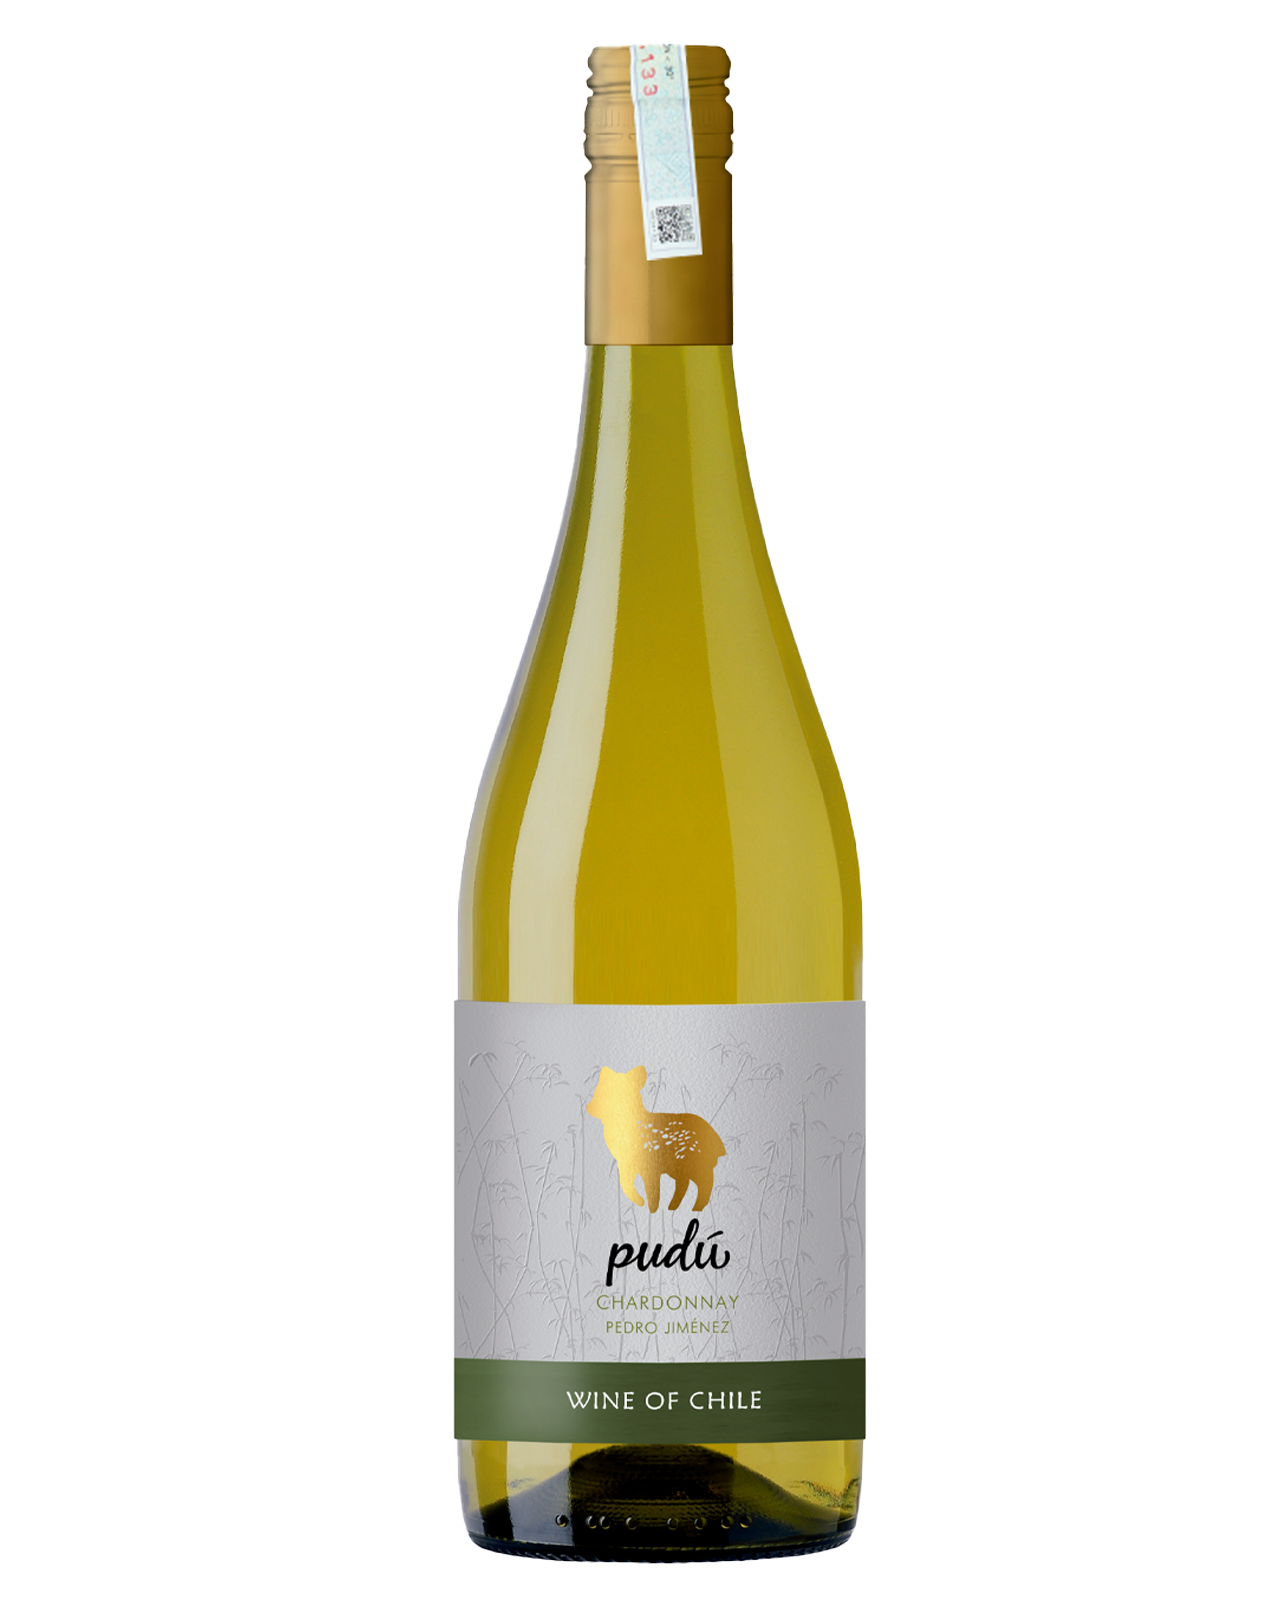  Rượu vang trắng Chile Pudu Chardonnay Pedro Jimenez trên 5% ABV* 